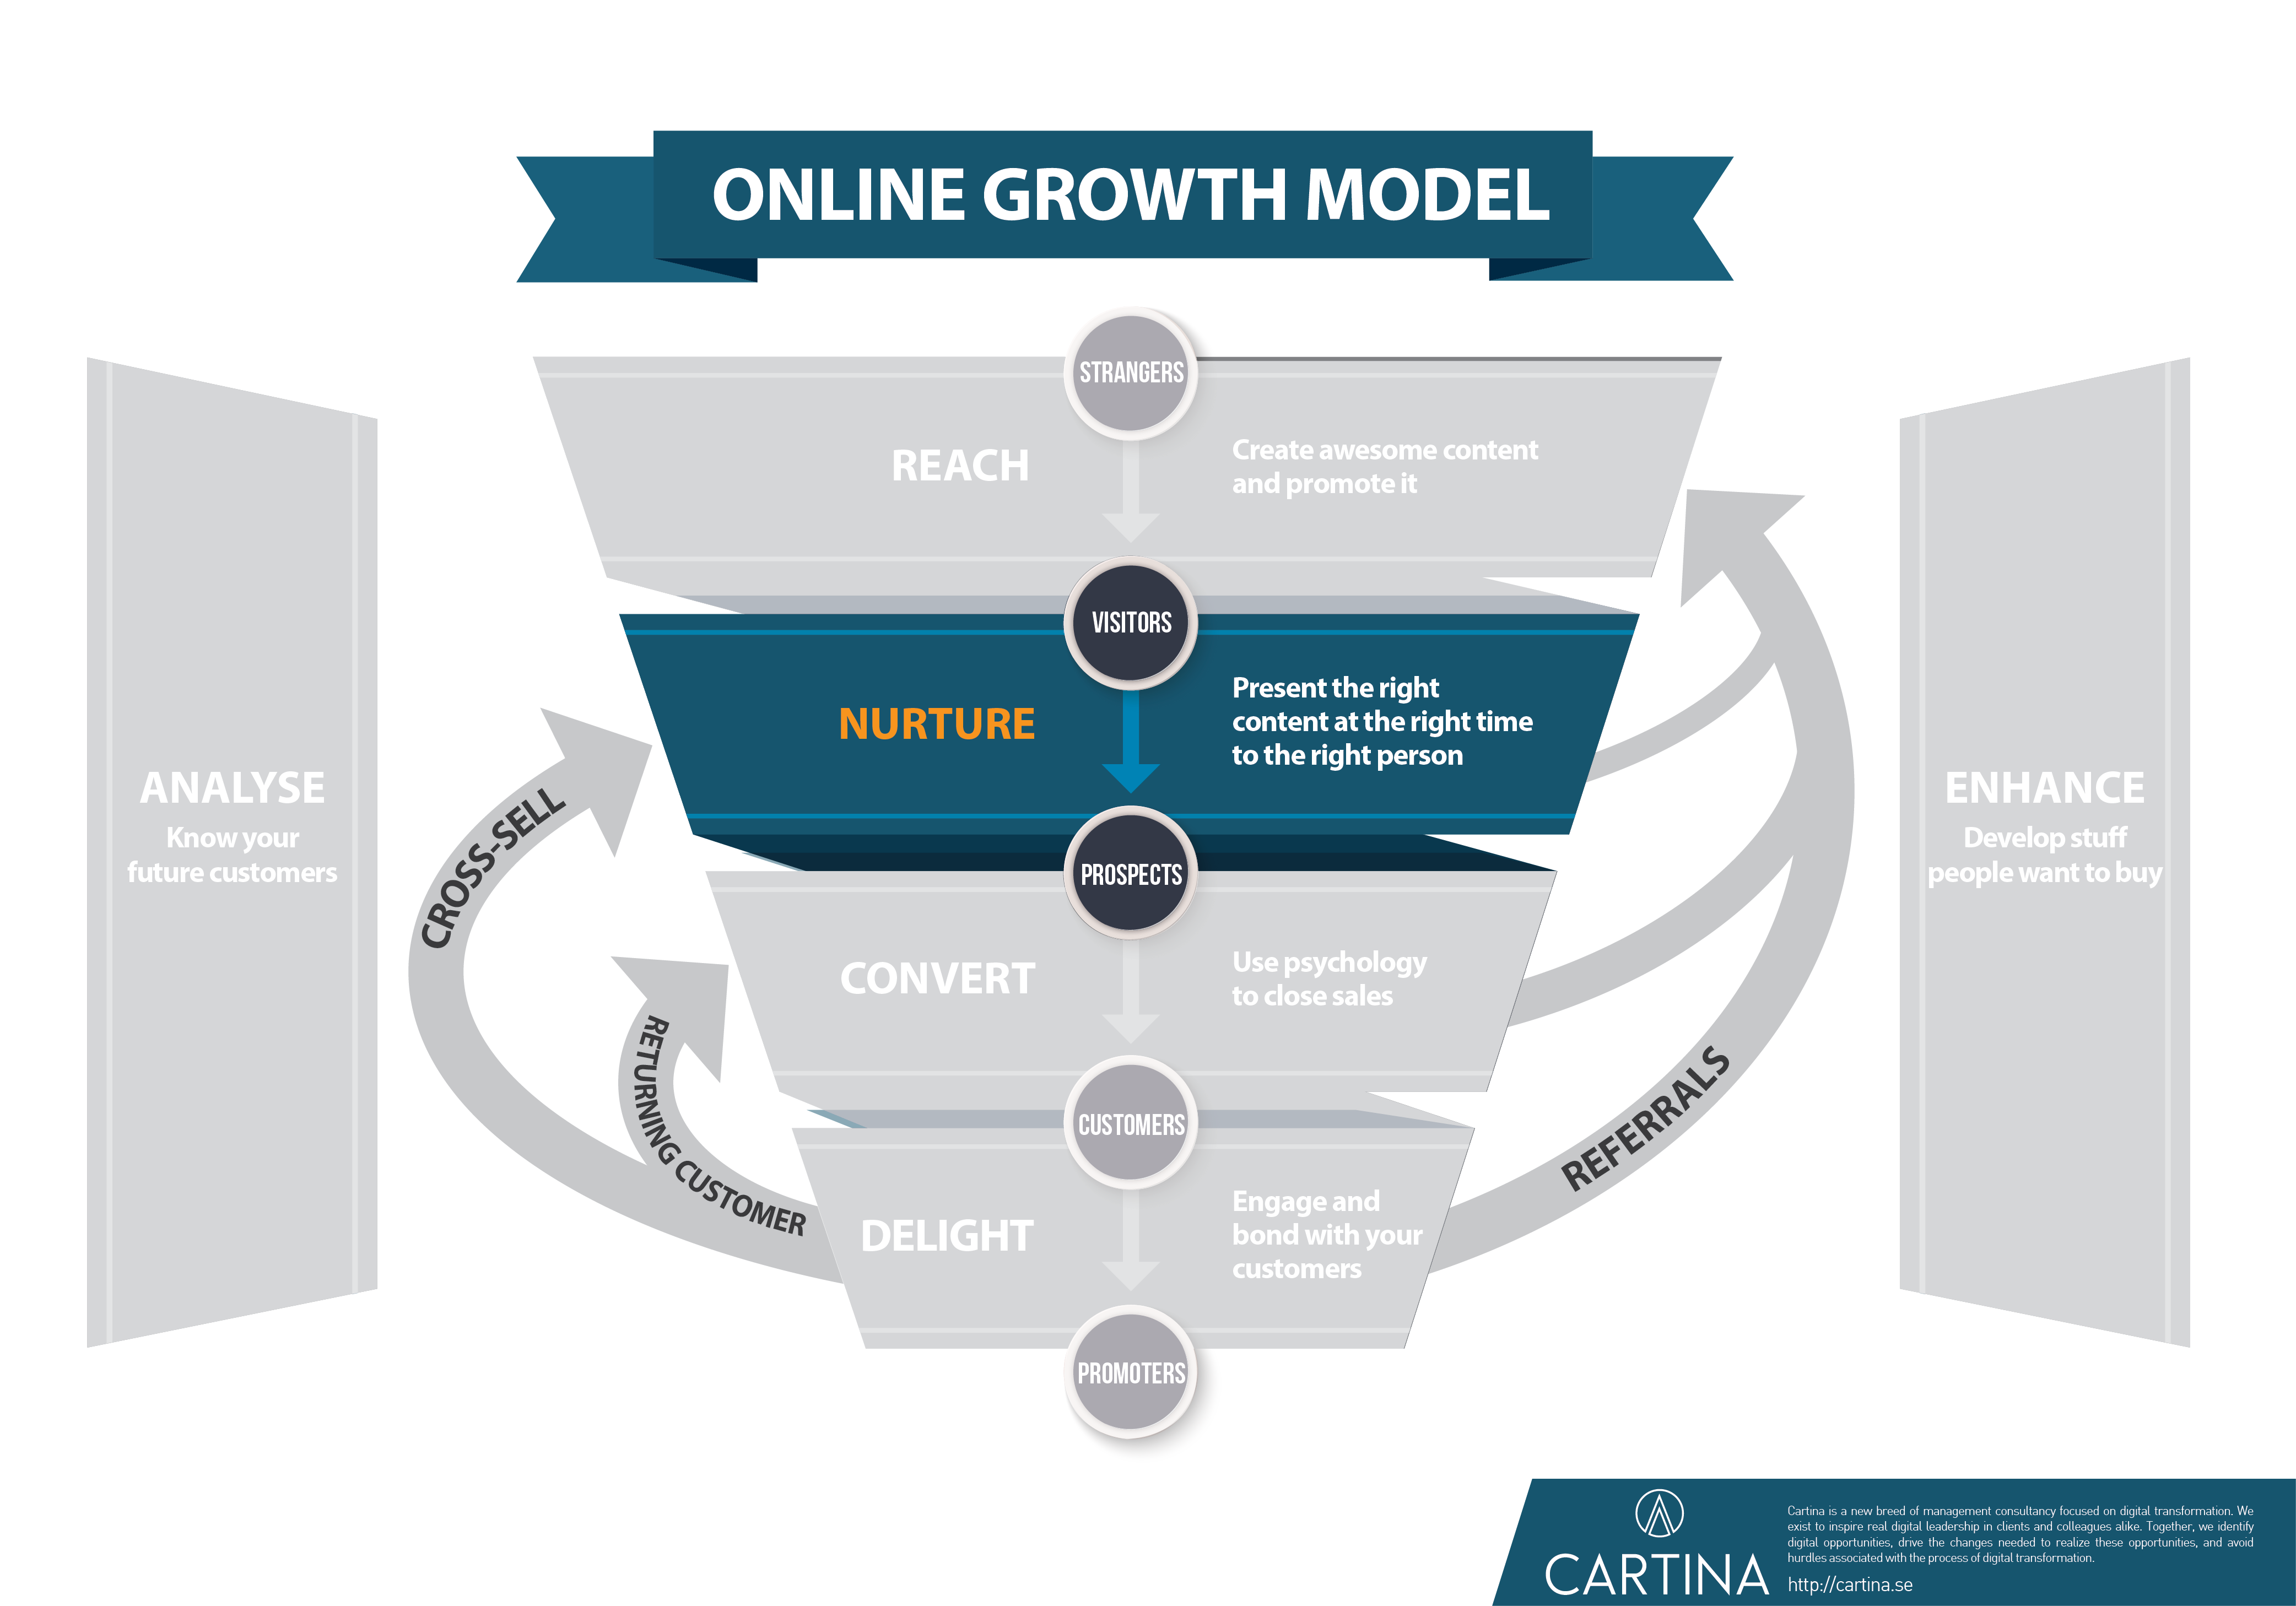 Growth model - Nurture step